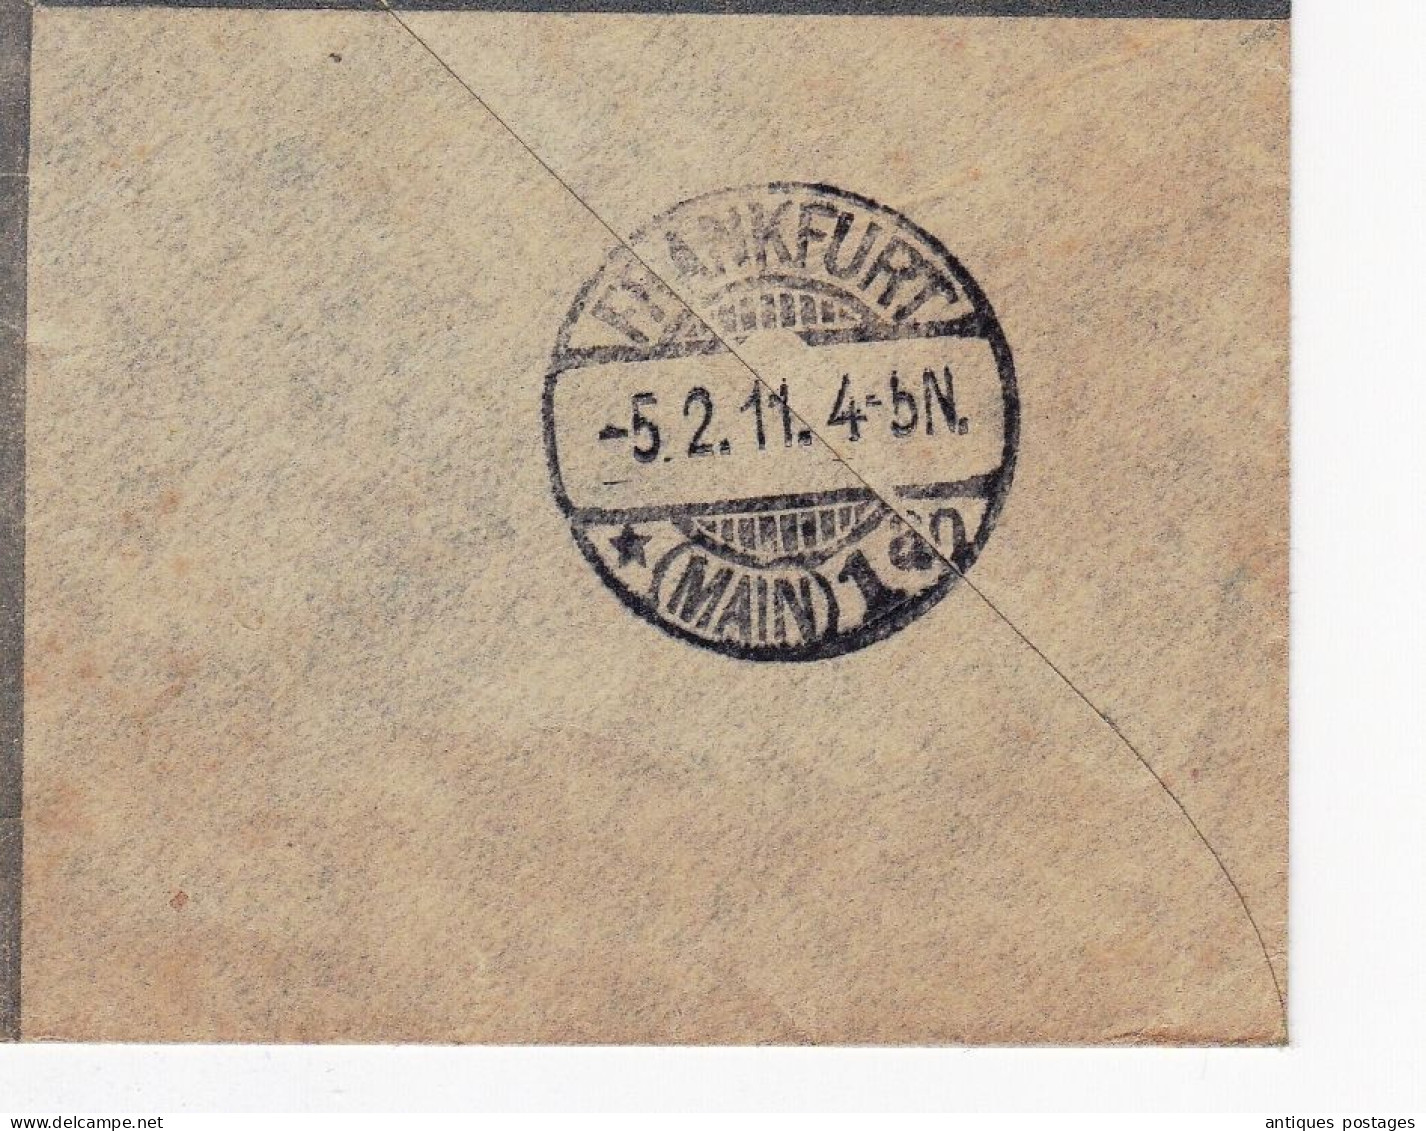 Registered 1911 London England Postal Stationery King Edward VII Frankfurt Deutchland Ernst Salomon Germany